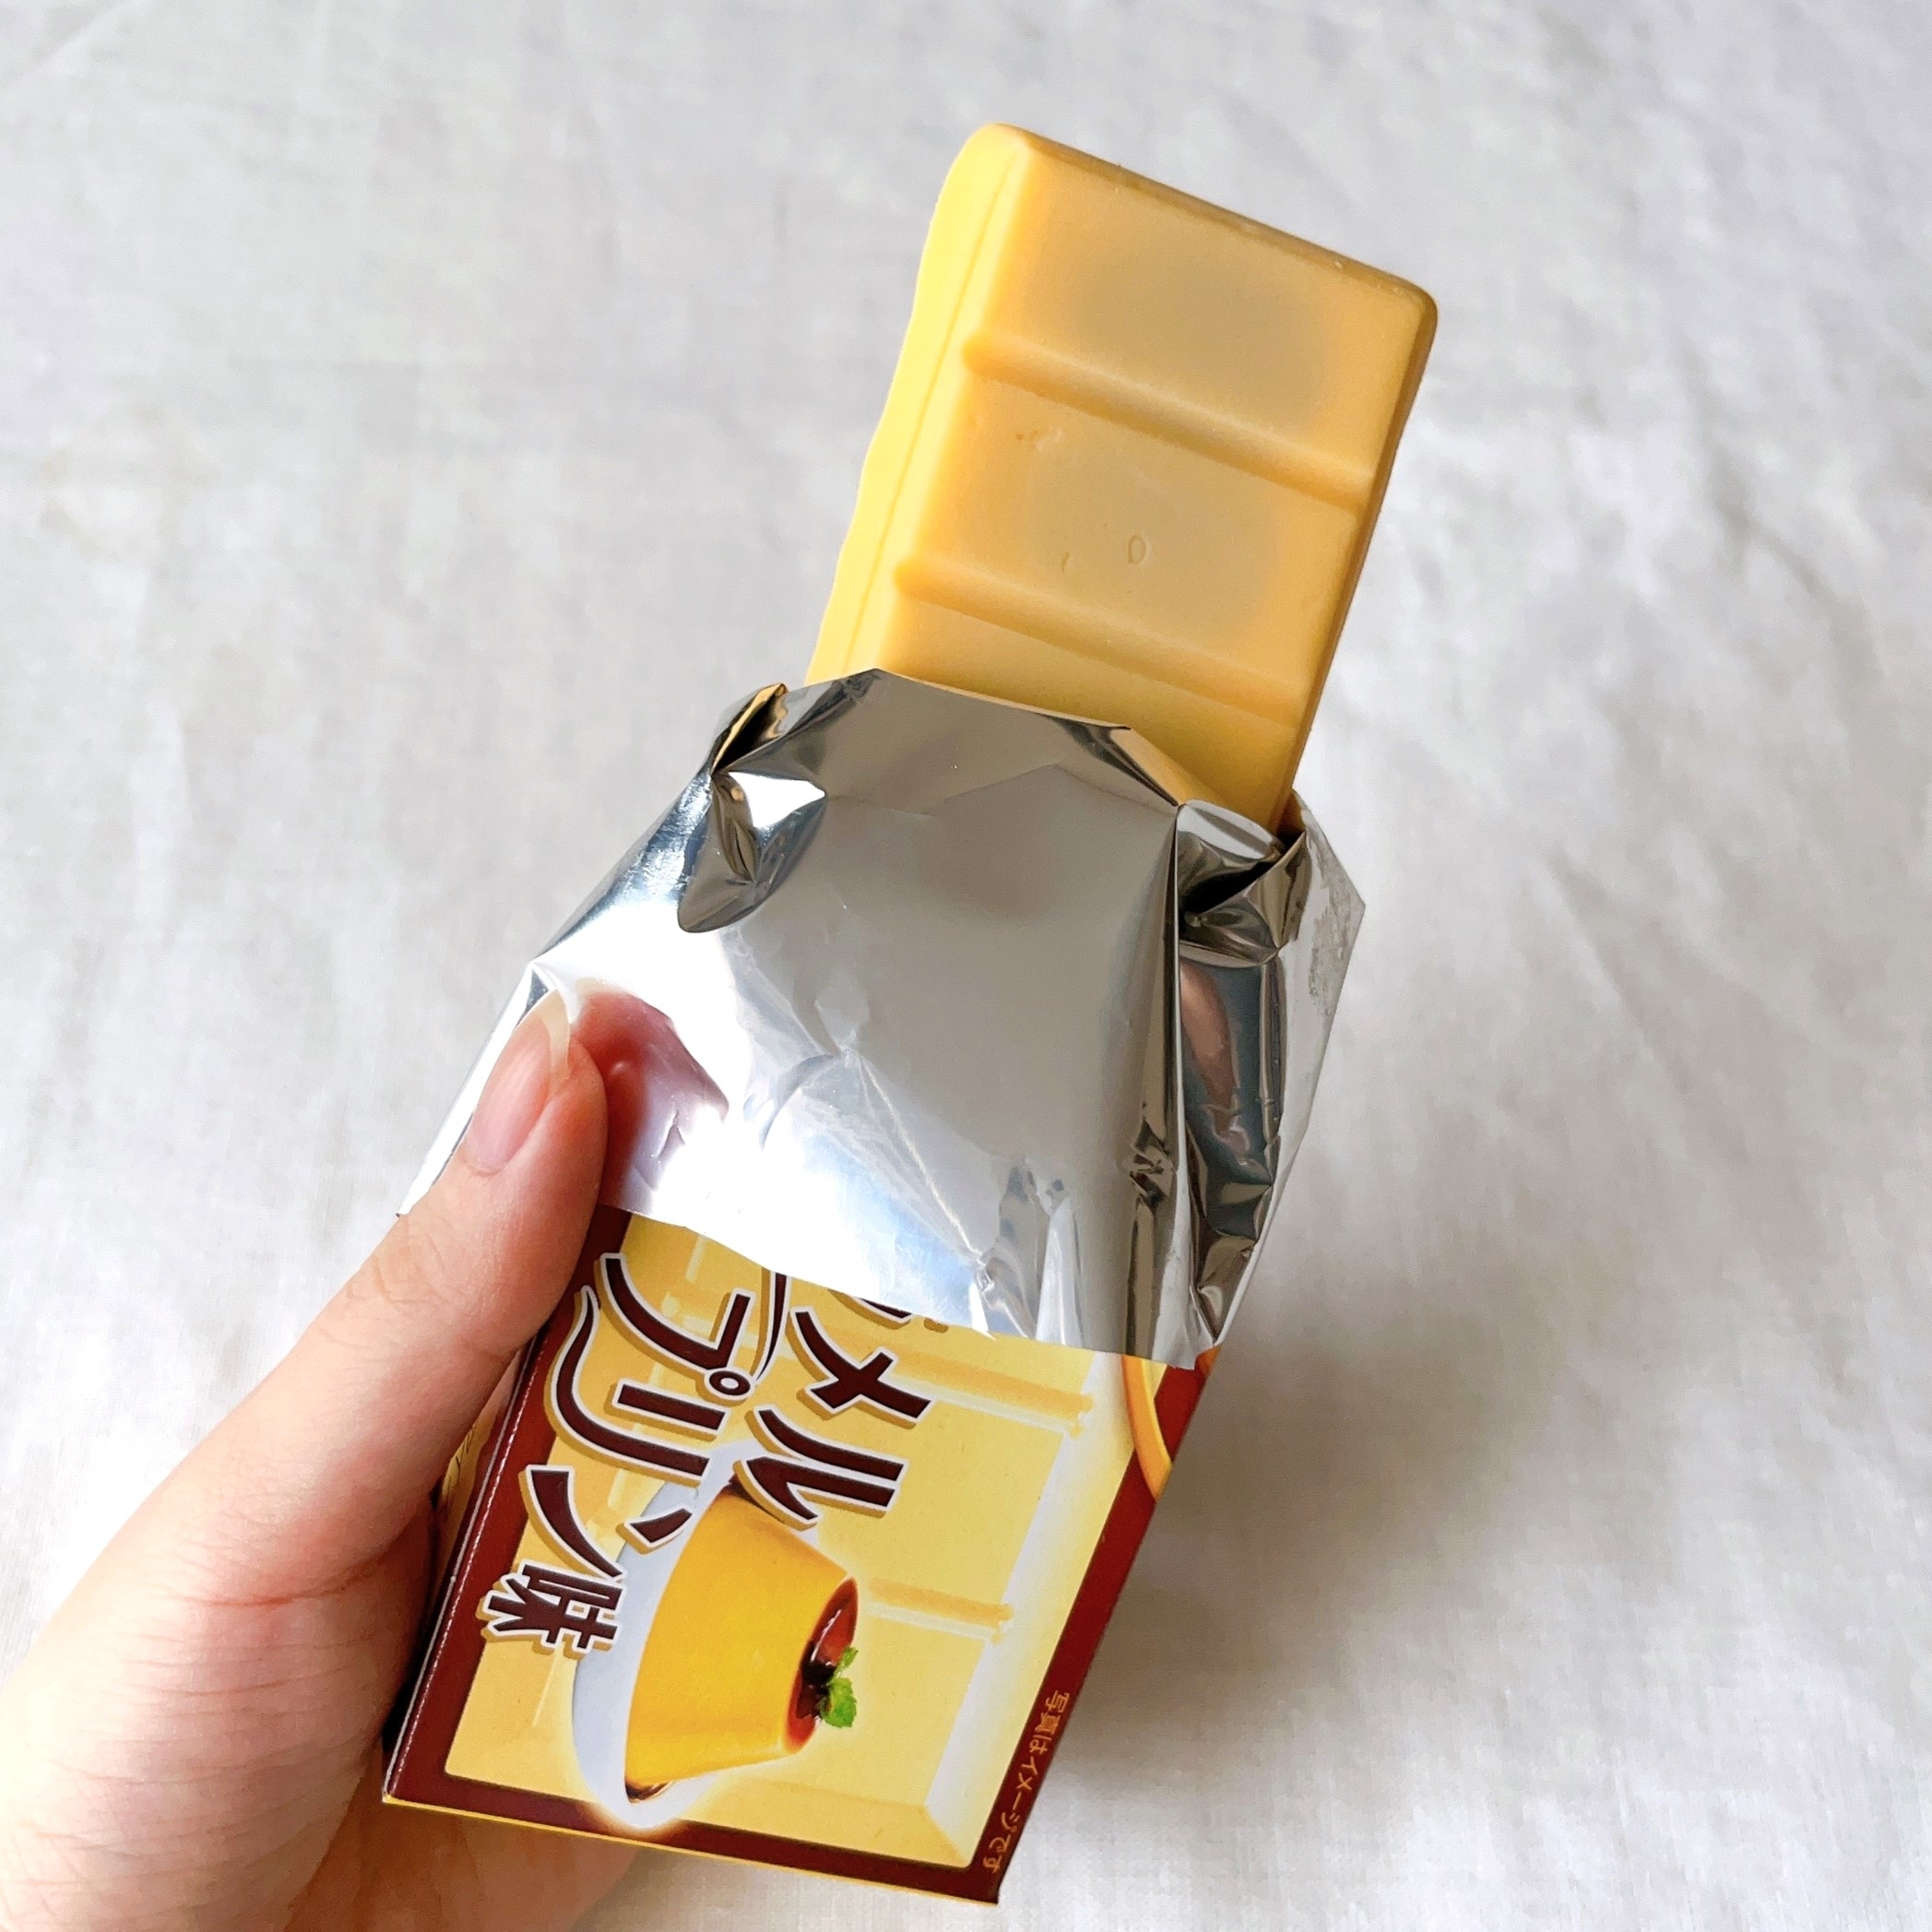 セブンイレブンのオススメの商品「森永製菓 板チョコアイス カラメルプリン味」